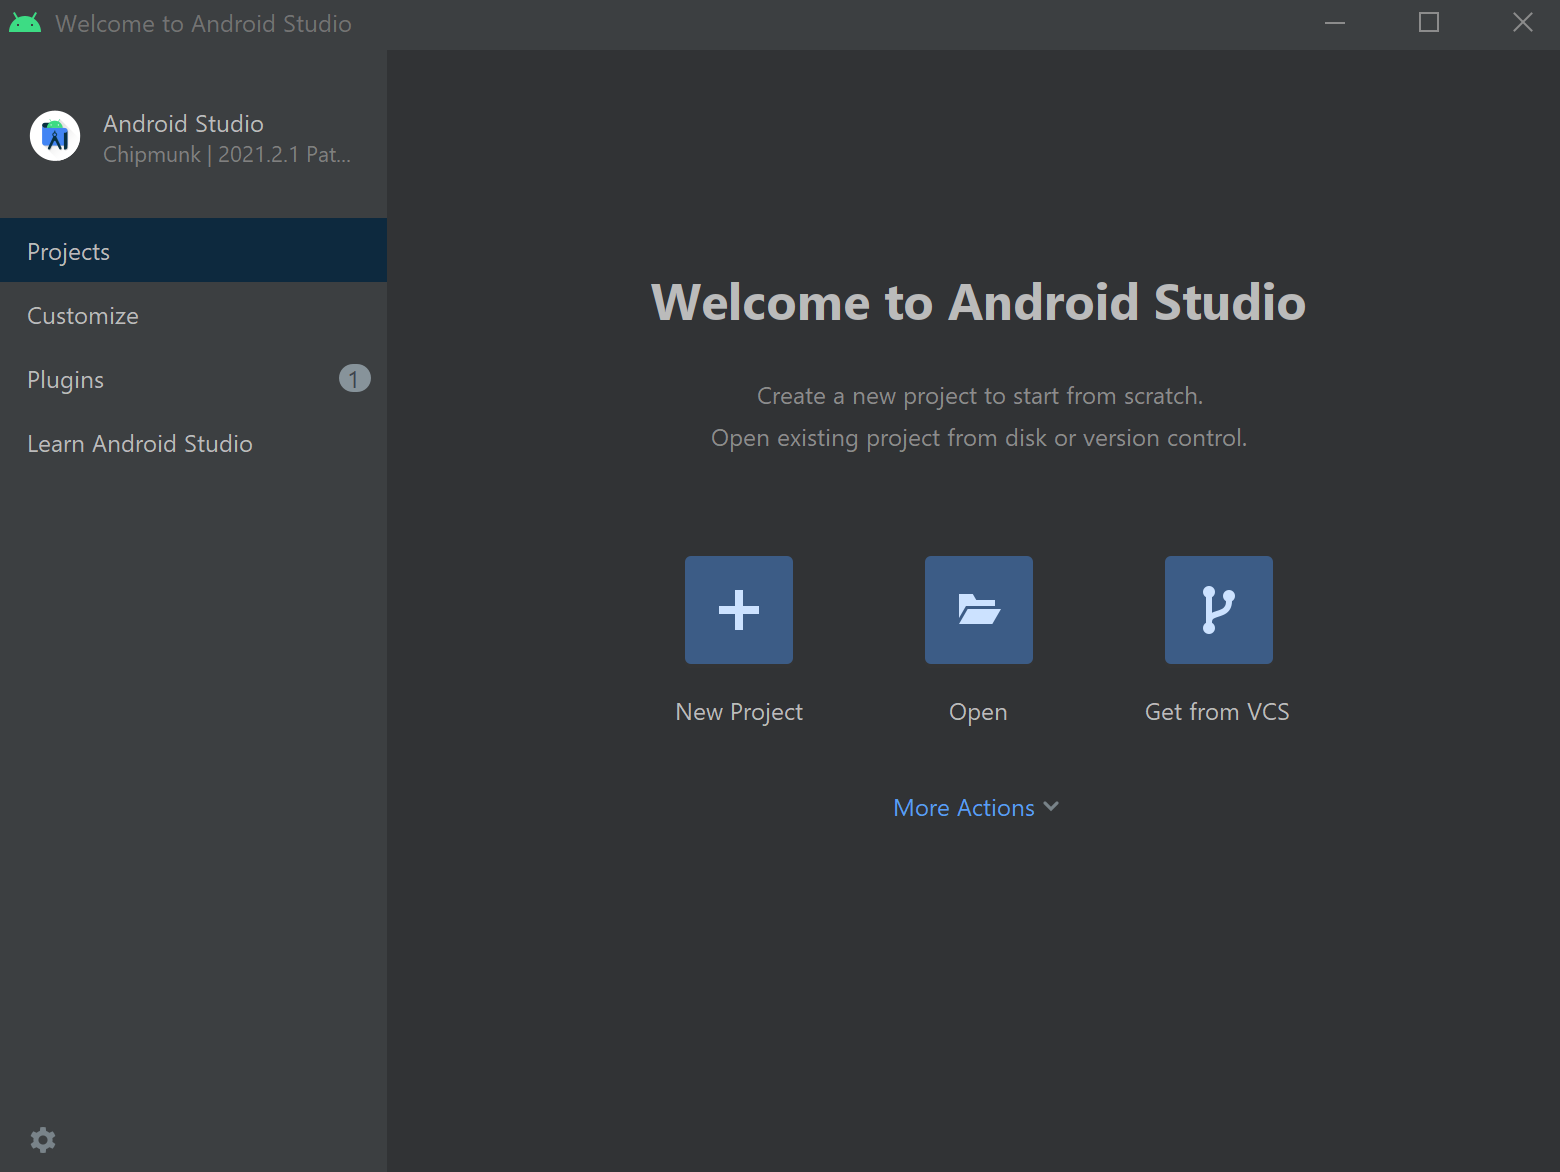 Captura de tela mostrando opções para abrir ou criar novos projetos.